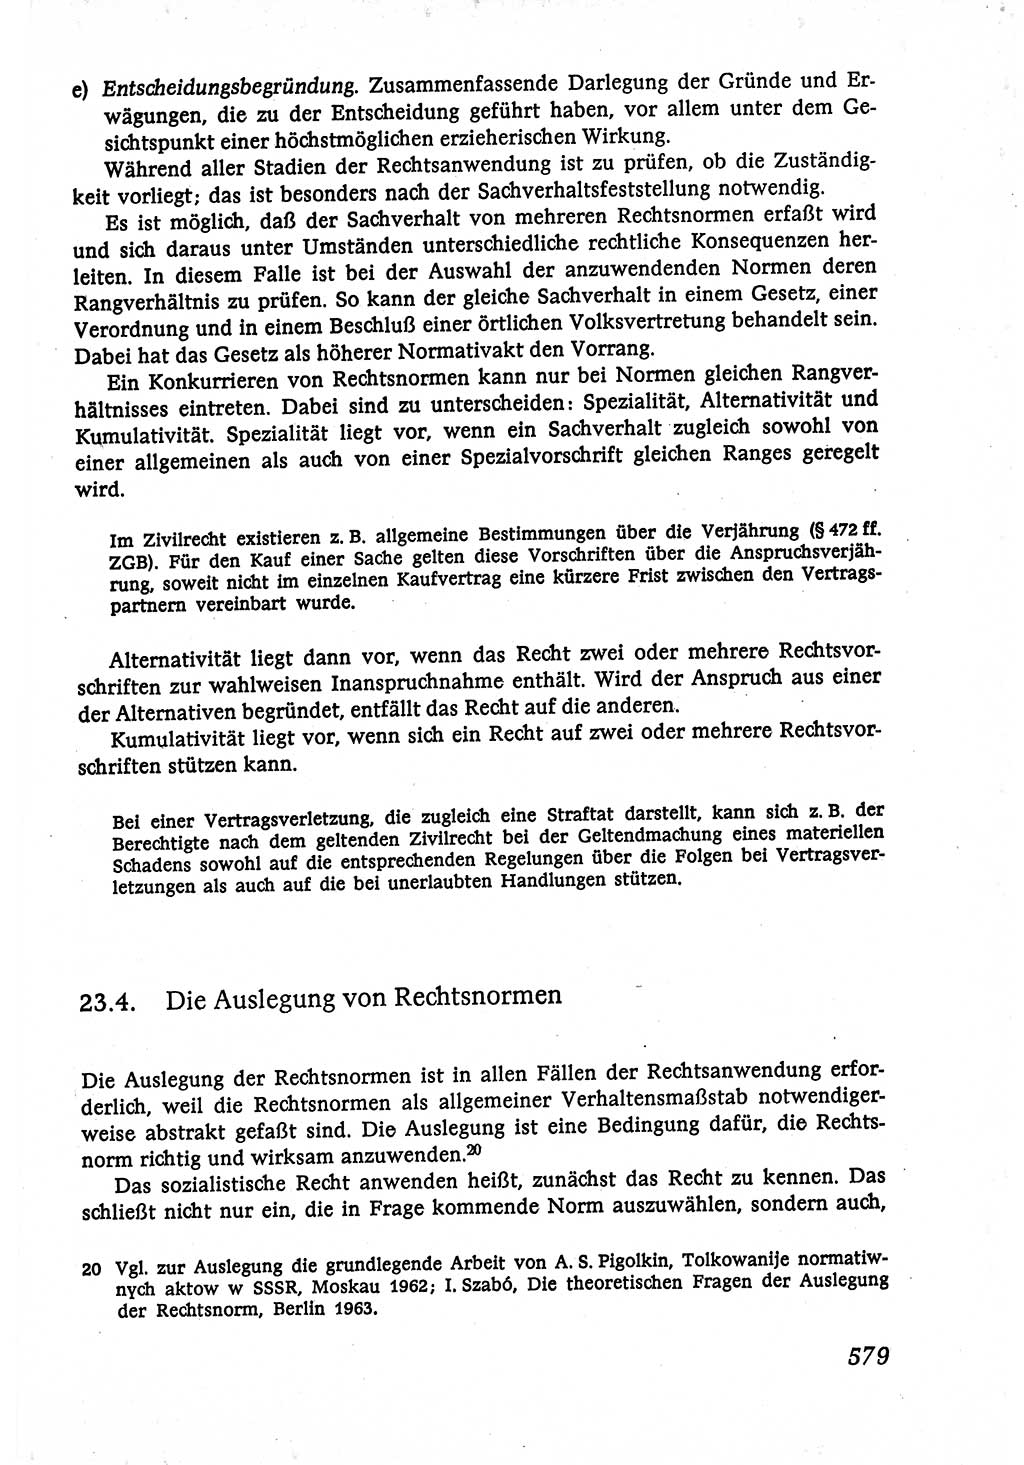 Marxistisch-leninistische (ML) Staats- und Rechtstheorie [Deutsche Demokratische Republik (DDR)], Lehrbuch 1980, Seite 579 (ML St.-R.-Th. DDR Lb. 1980, S. 579)